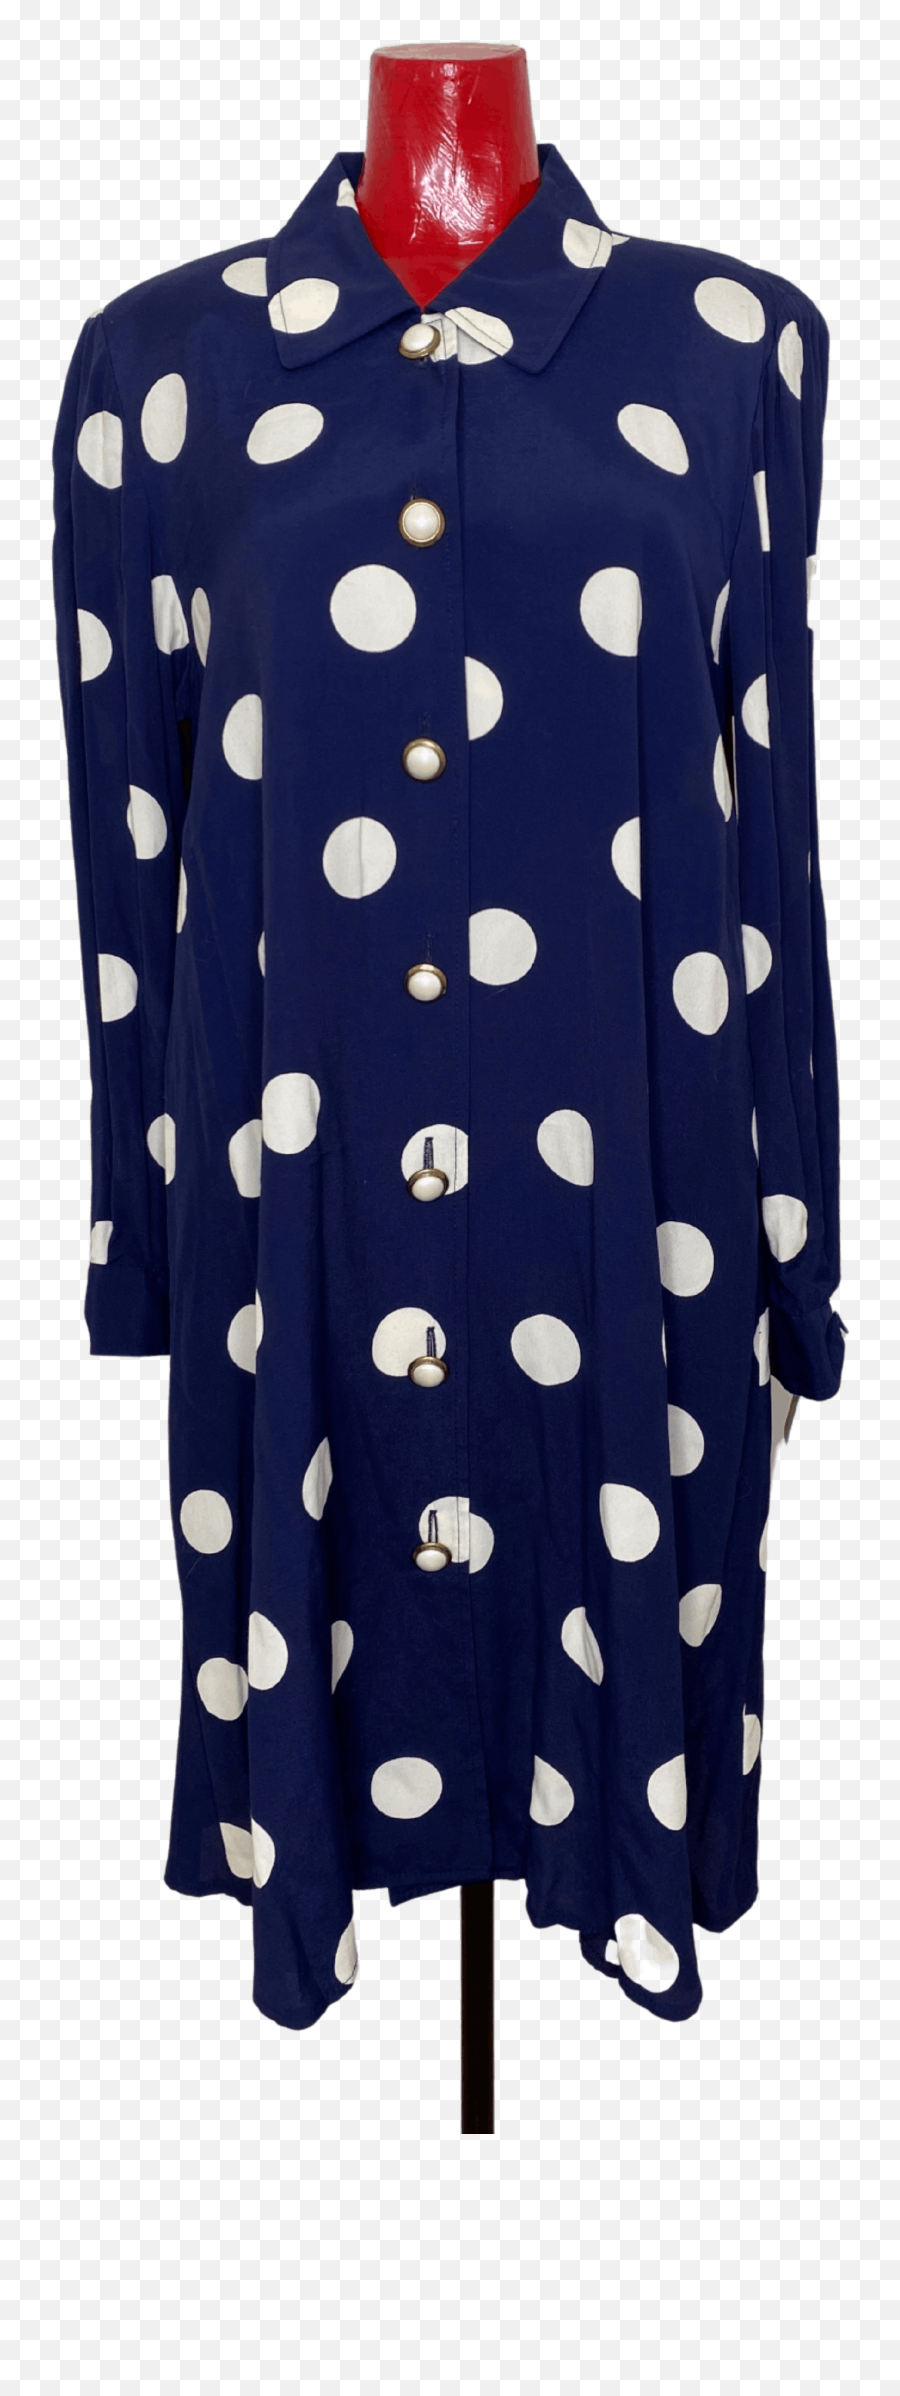 Buy Liz Claiborne Polka Dot Dress Cheap Online Emoji,Liz Claiborne Logo